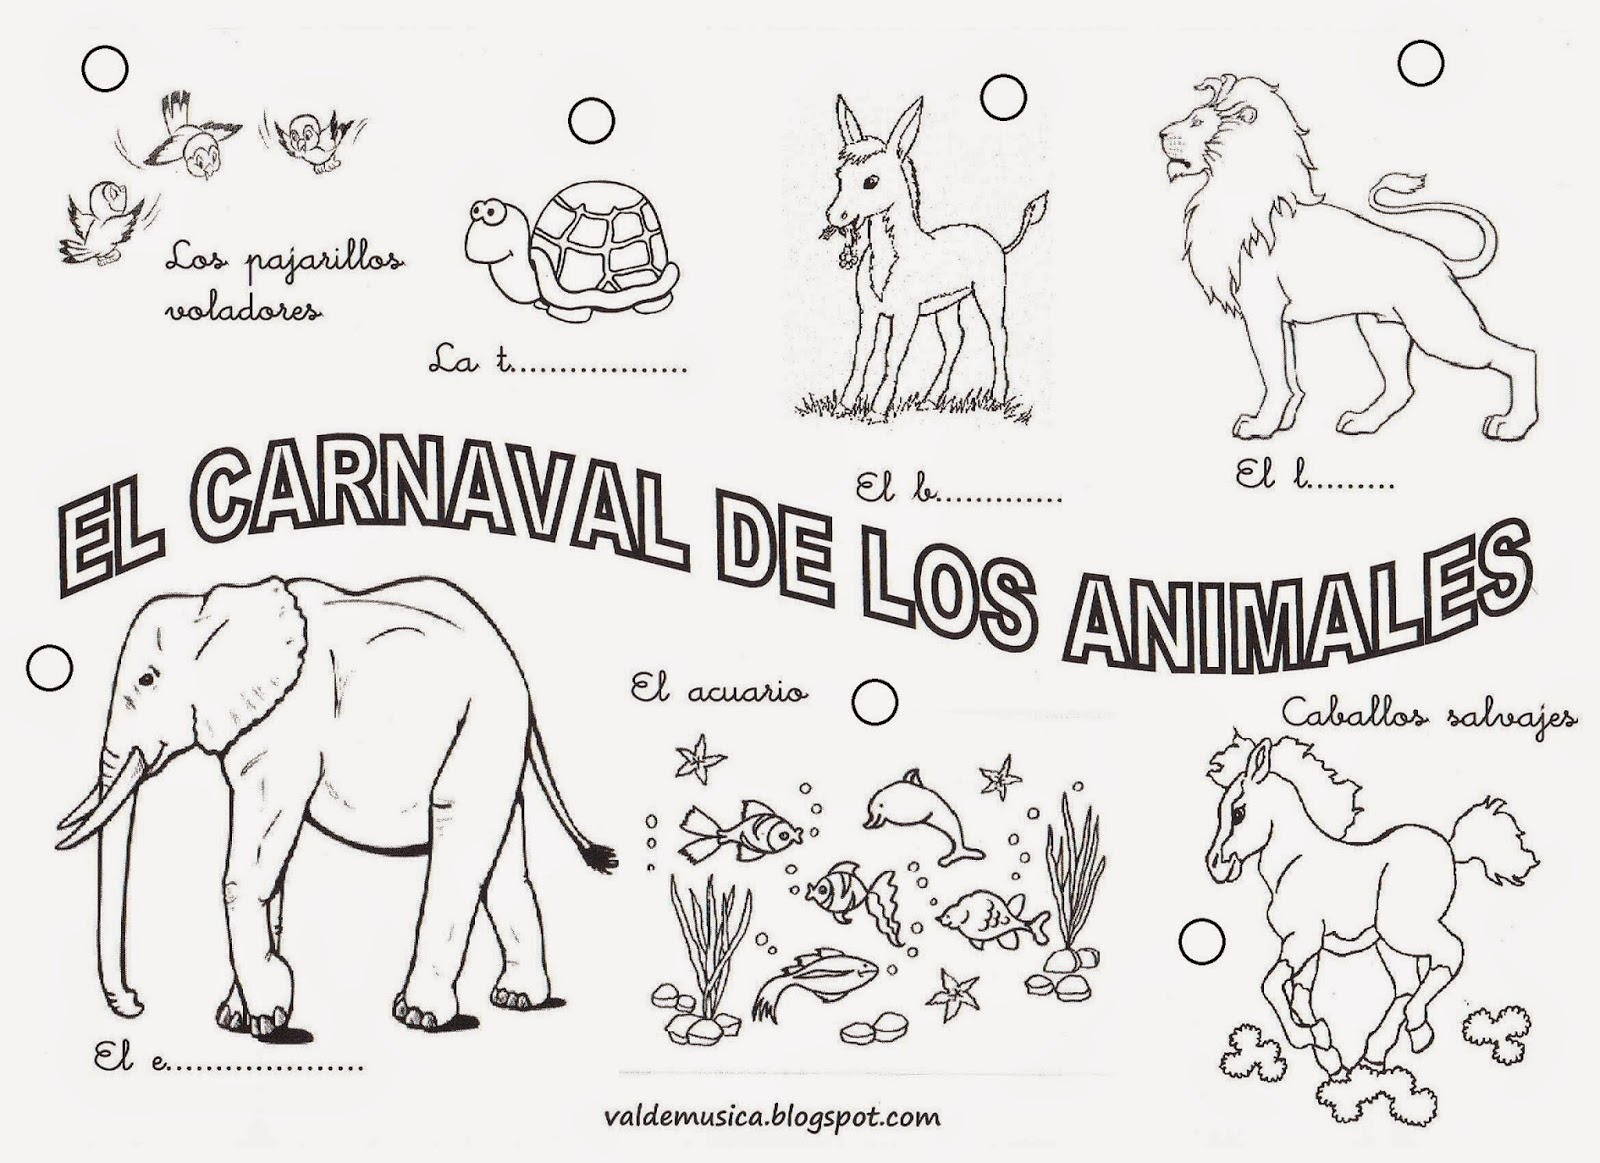 VALDEMÚSICA: EL CARNAVAL DE LOS ANIMALES DE CAMILLE SAINT-SAËNS